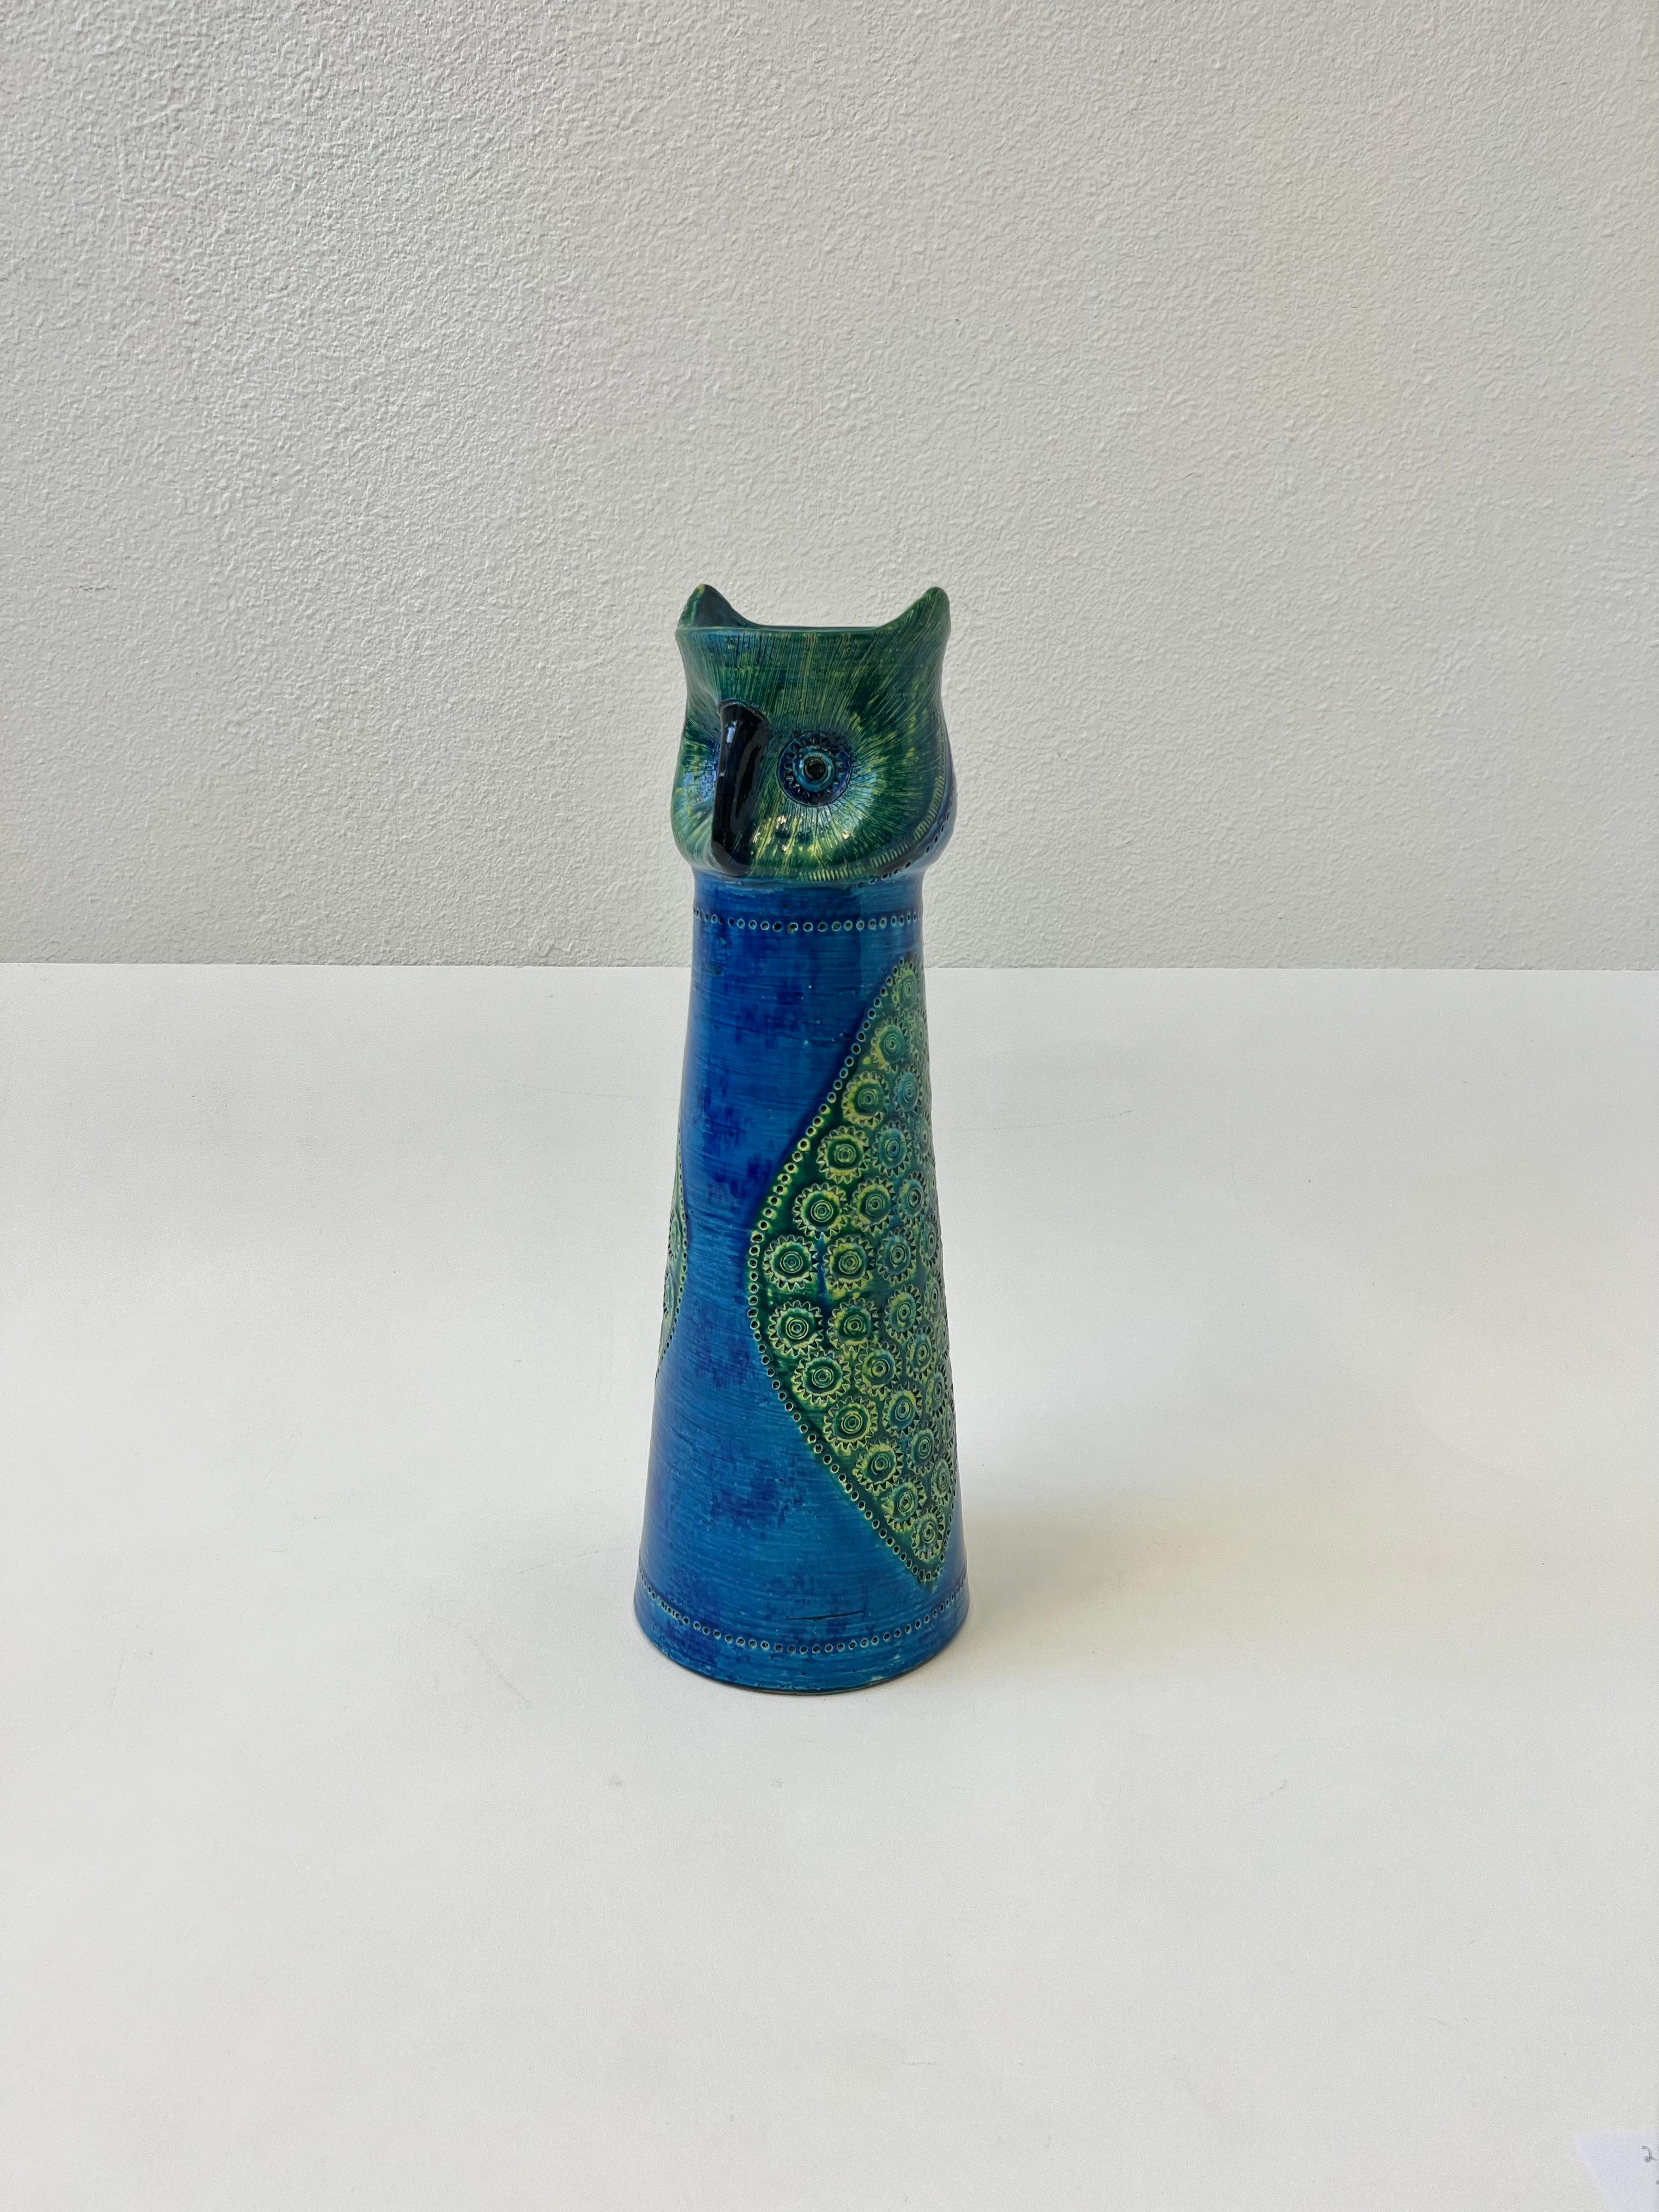 1970’s Rare large Italian “Rimini Blue” ceramic owl vase by Aldo Londi for Bitossi. 
In beautiful original condition. 

Measurements: 20” High, 7” Diameter. 